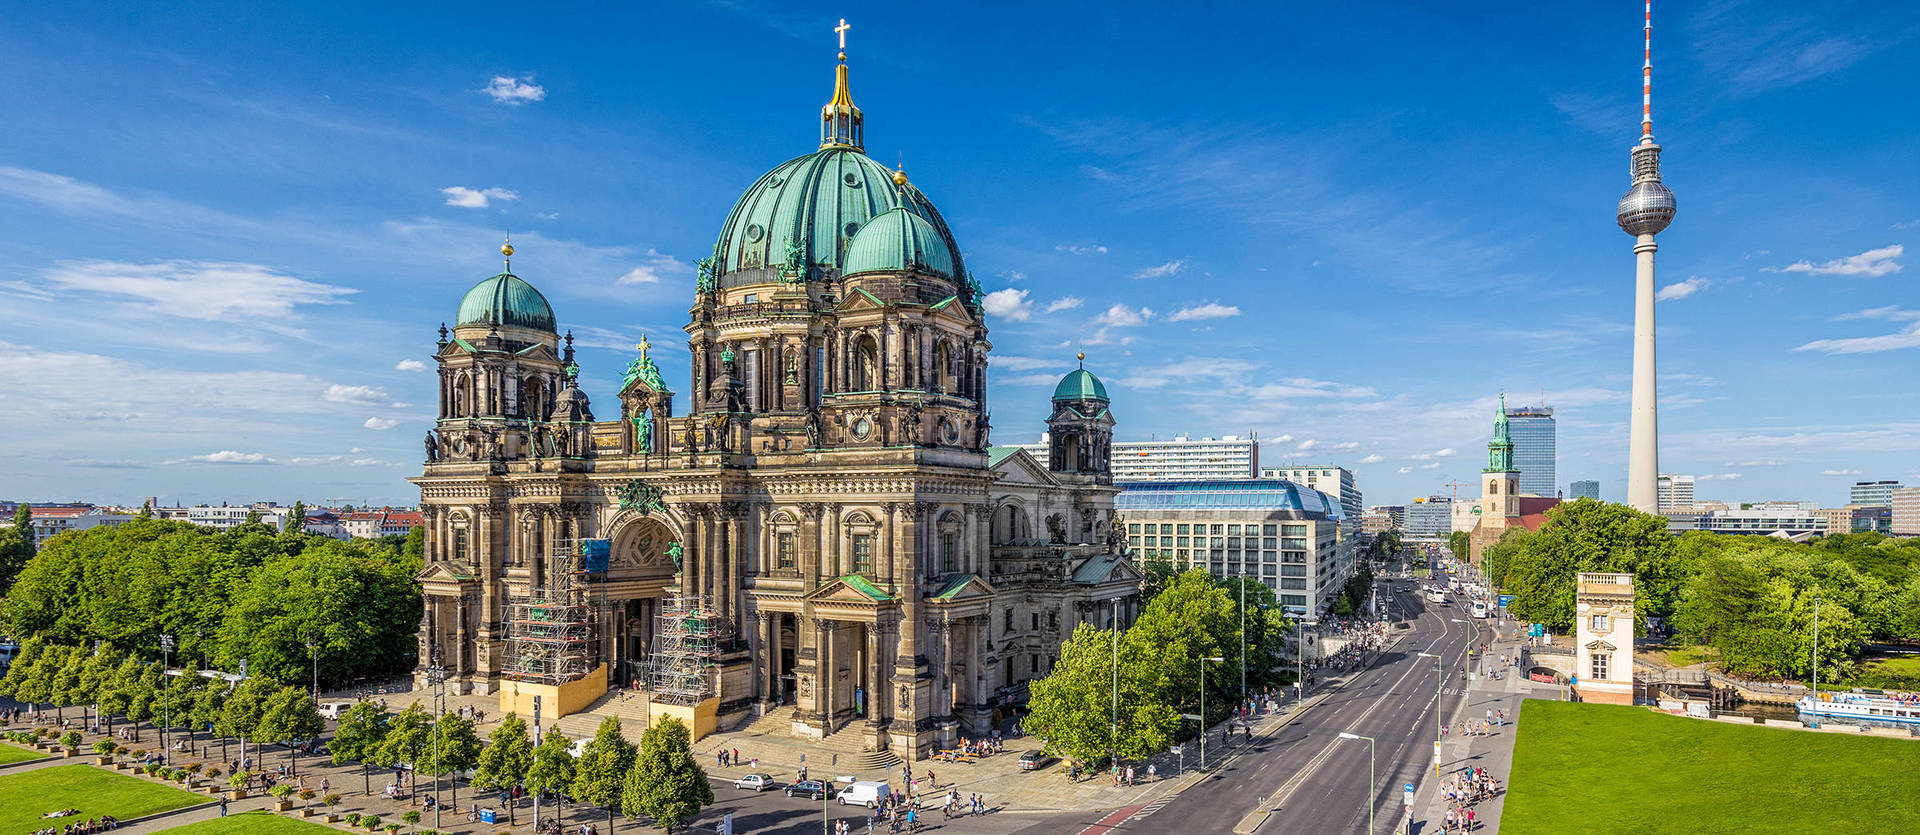 Sehenswürdigkeiten von Berlin besuchen - H+ Hotel Berlin Mitte - Offizielle Webseite